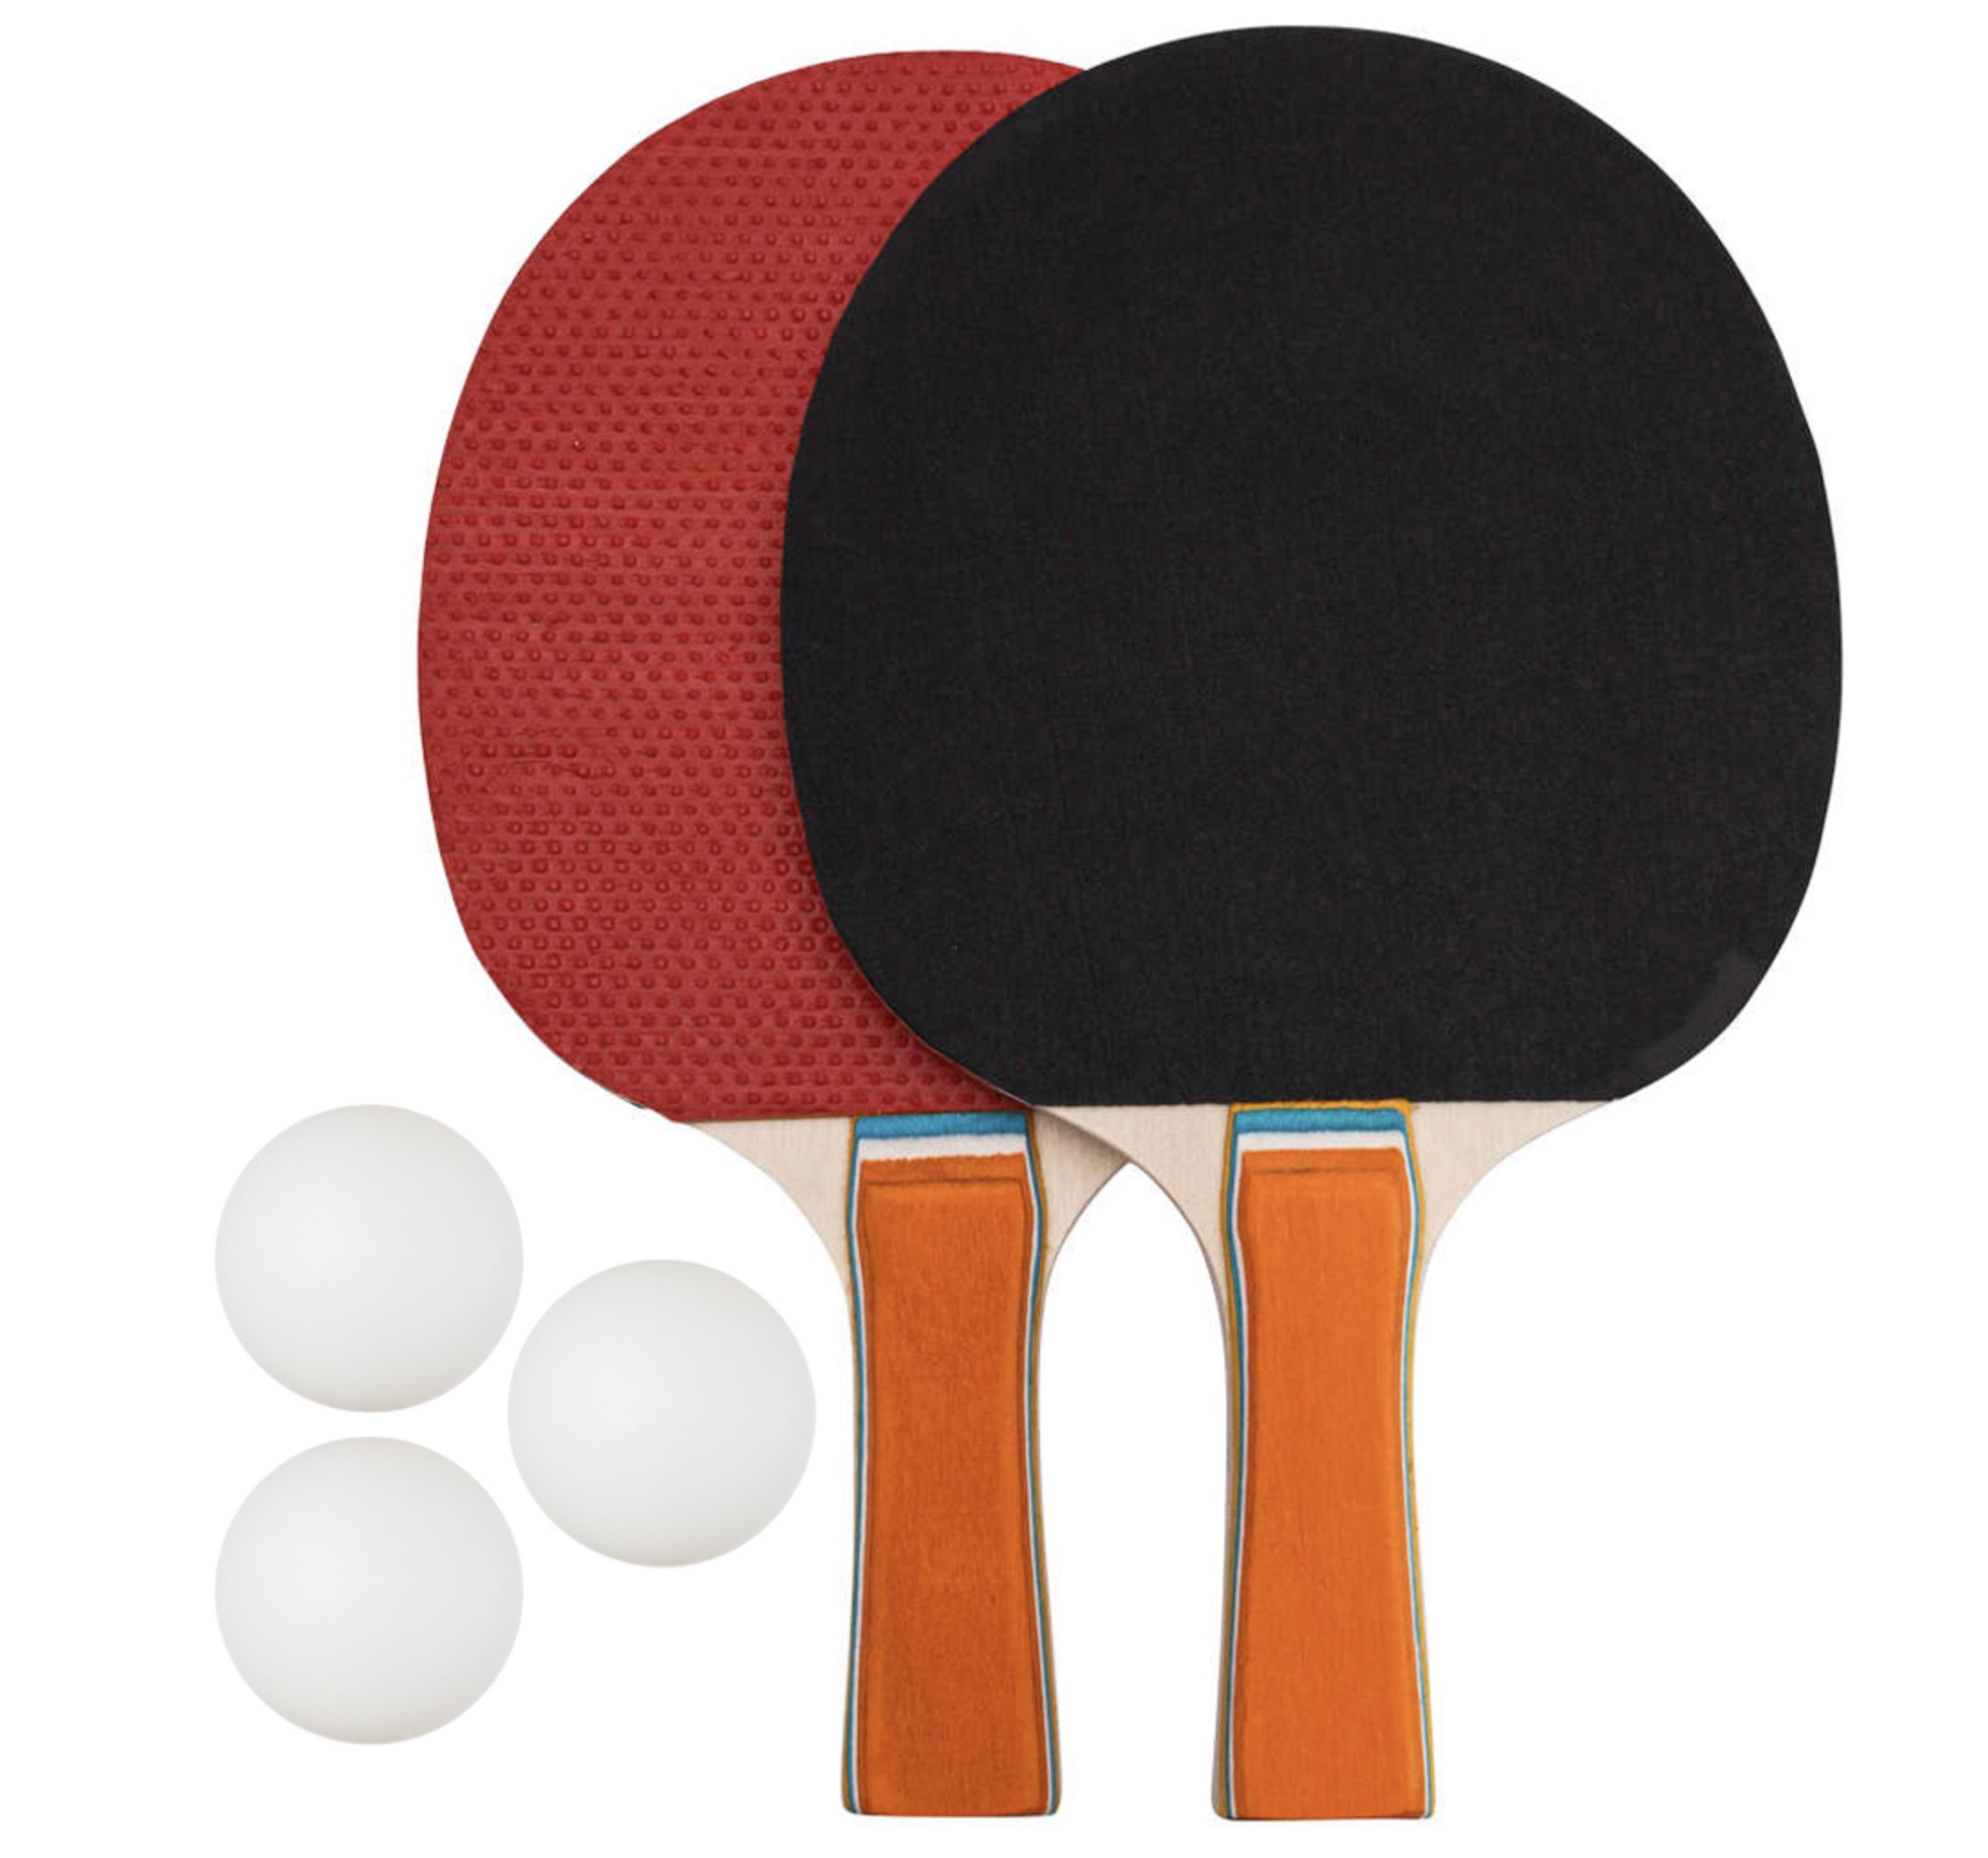 2er Set Jelex Topspin Tischtennis Schläger mit 3 Bällen für 8,39€ (statt 15€)